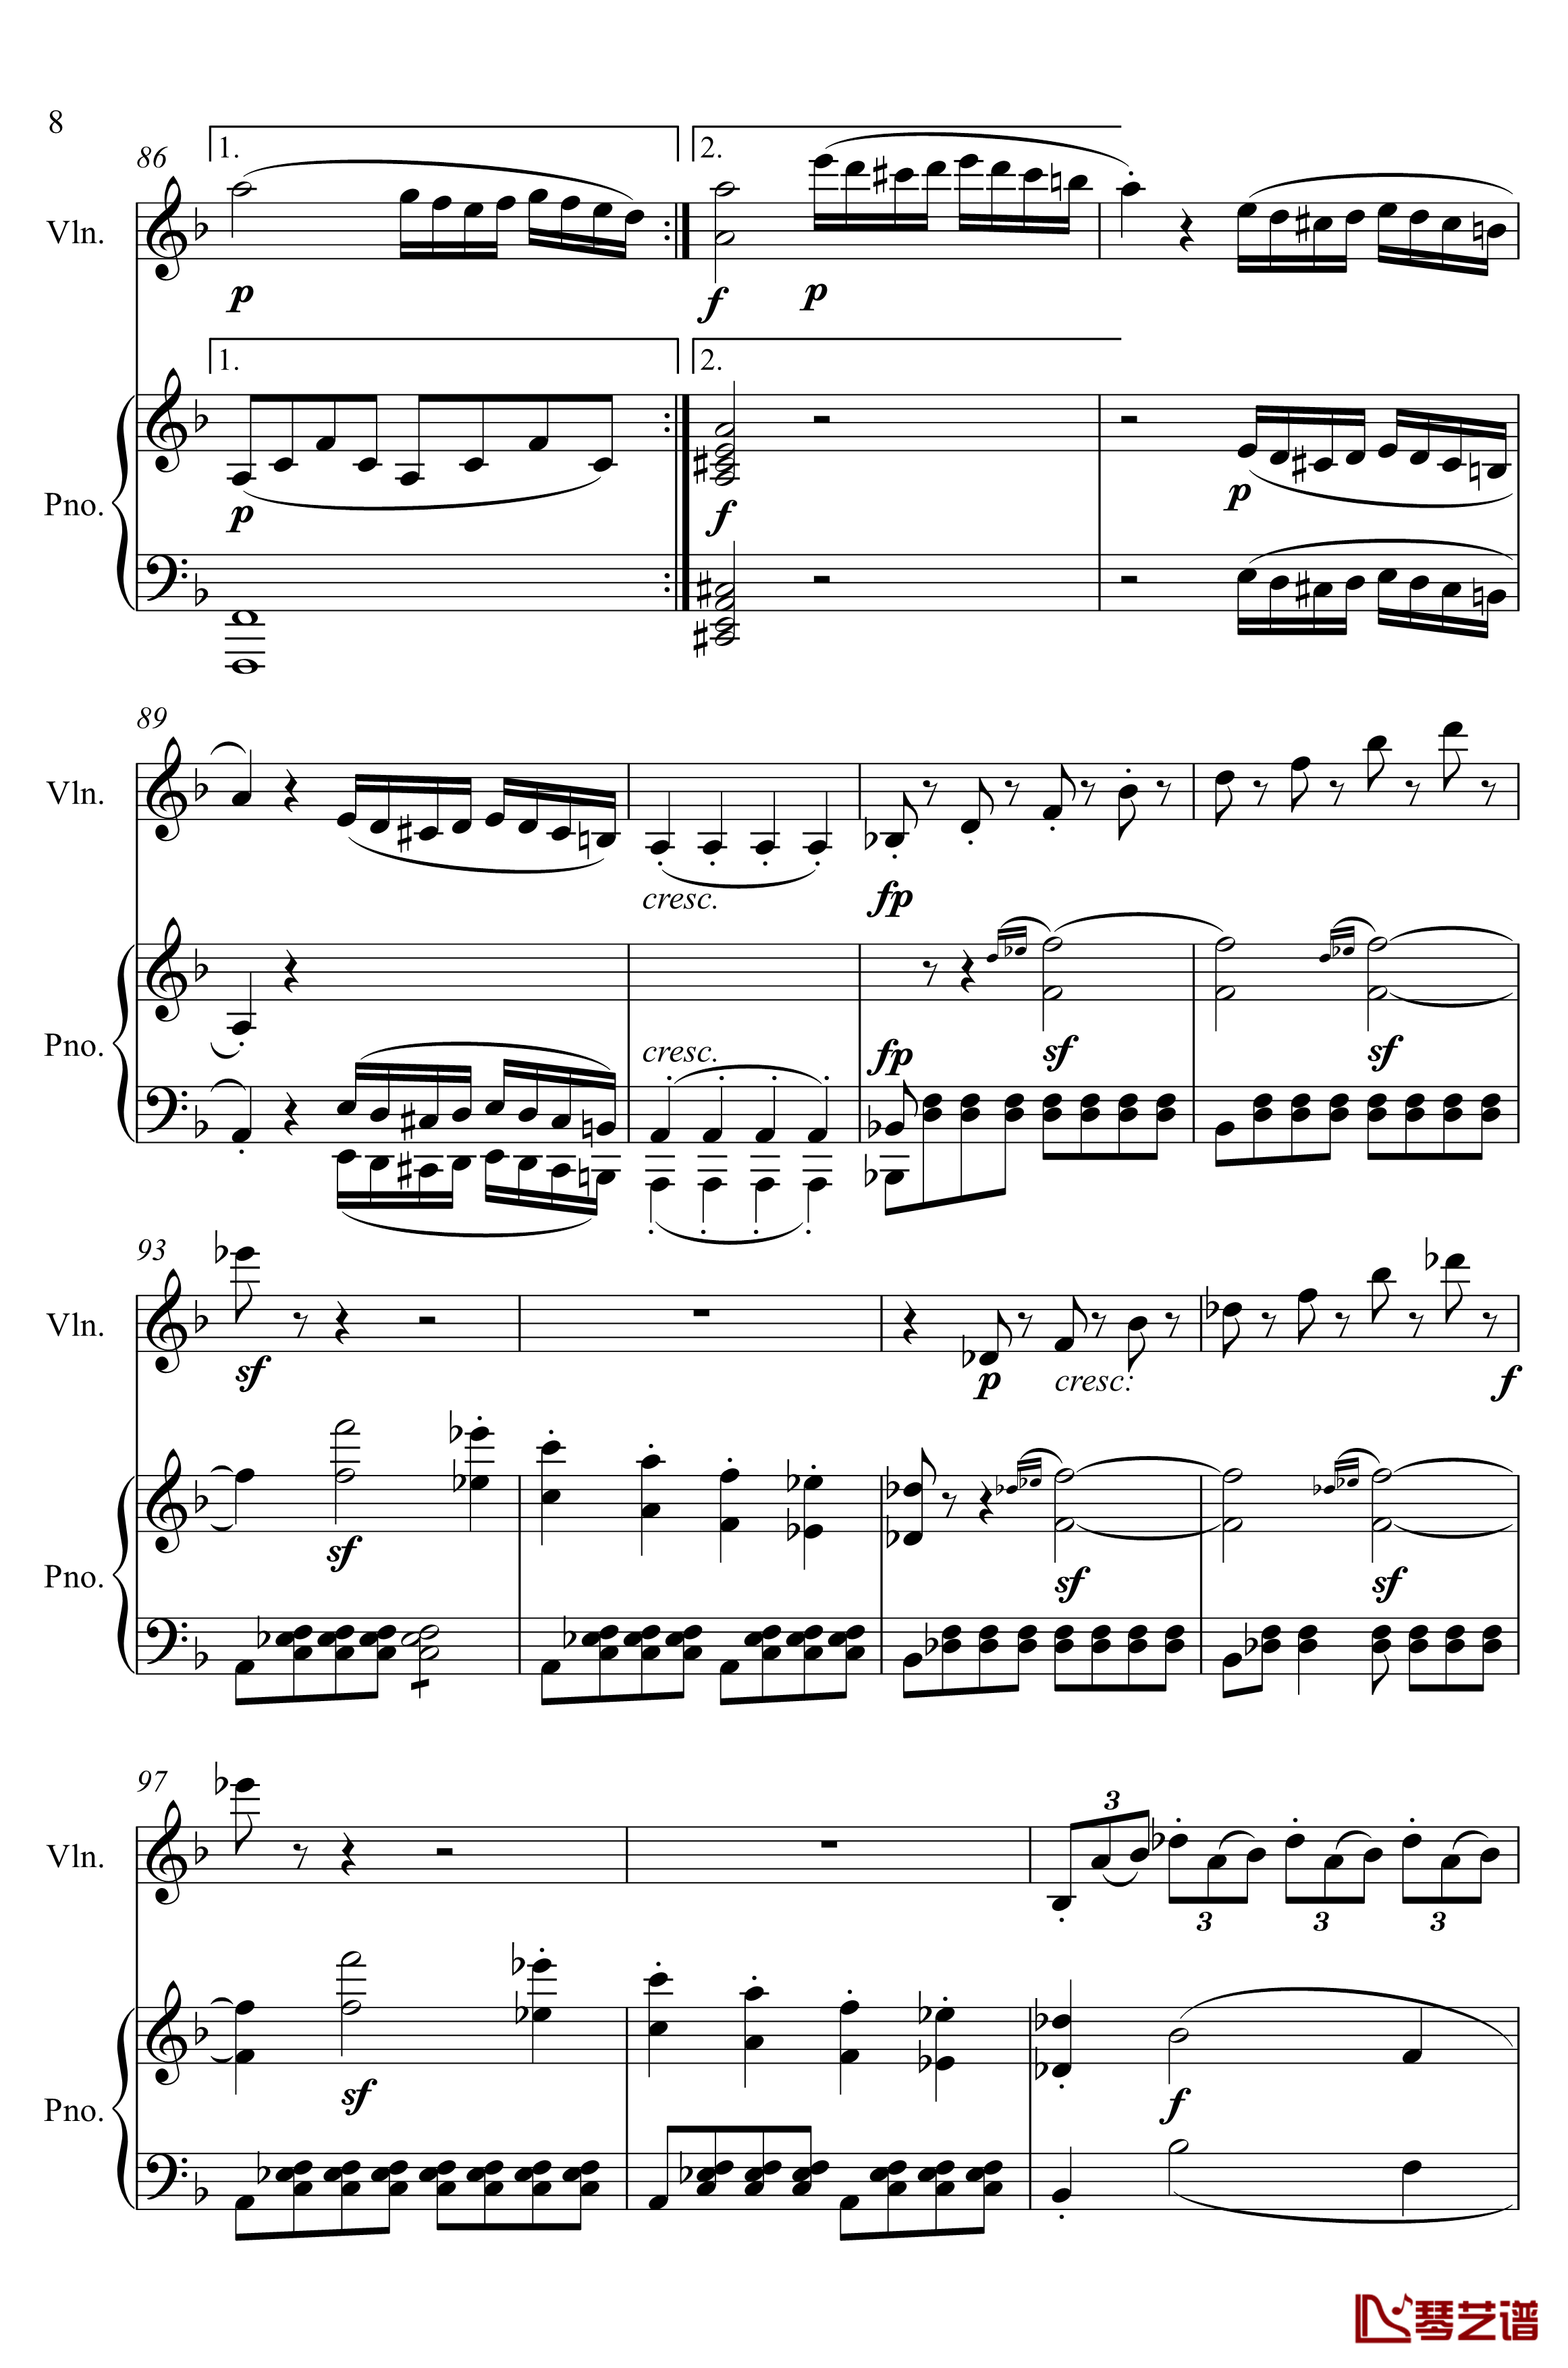 第5小提琴与钢琴奏鸣曲钢琴谱-第一乐章钢琴谱-贝多芬-beethoven8